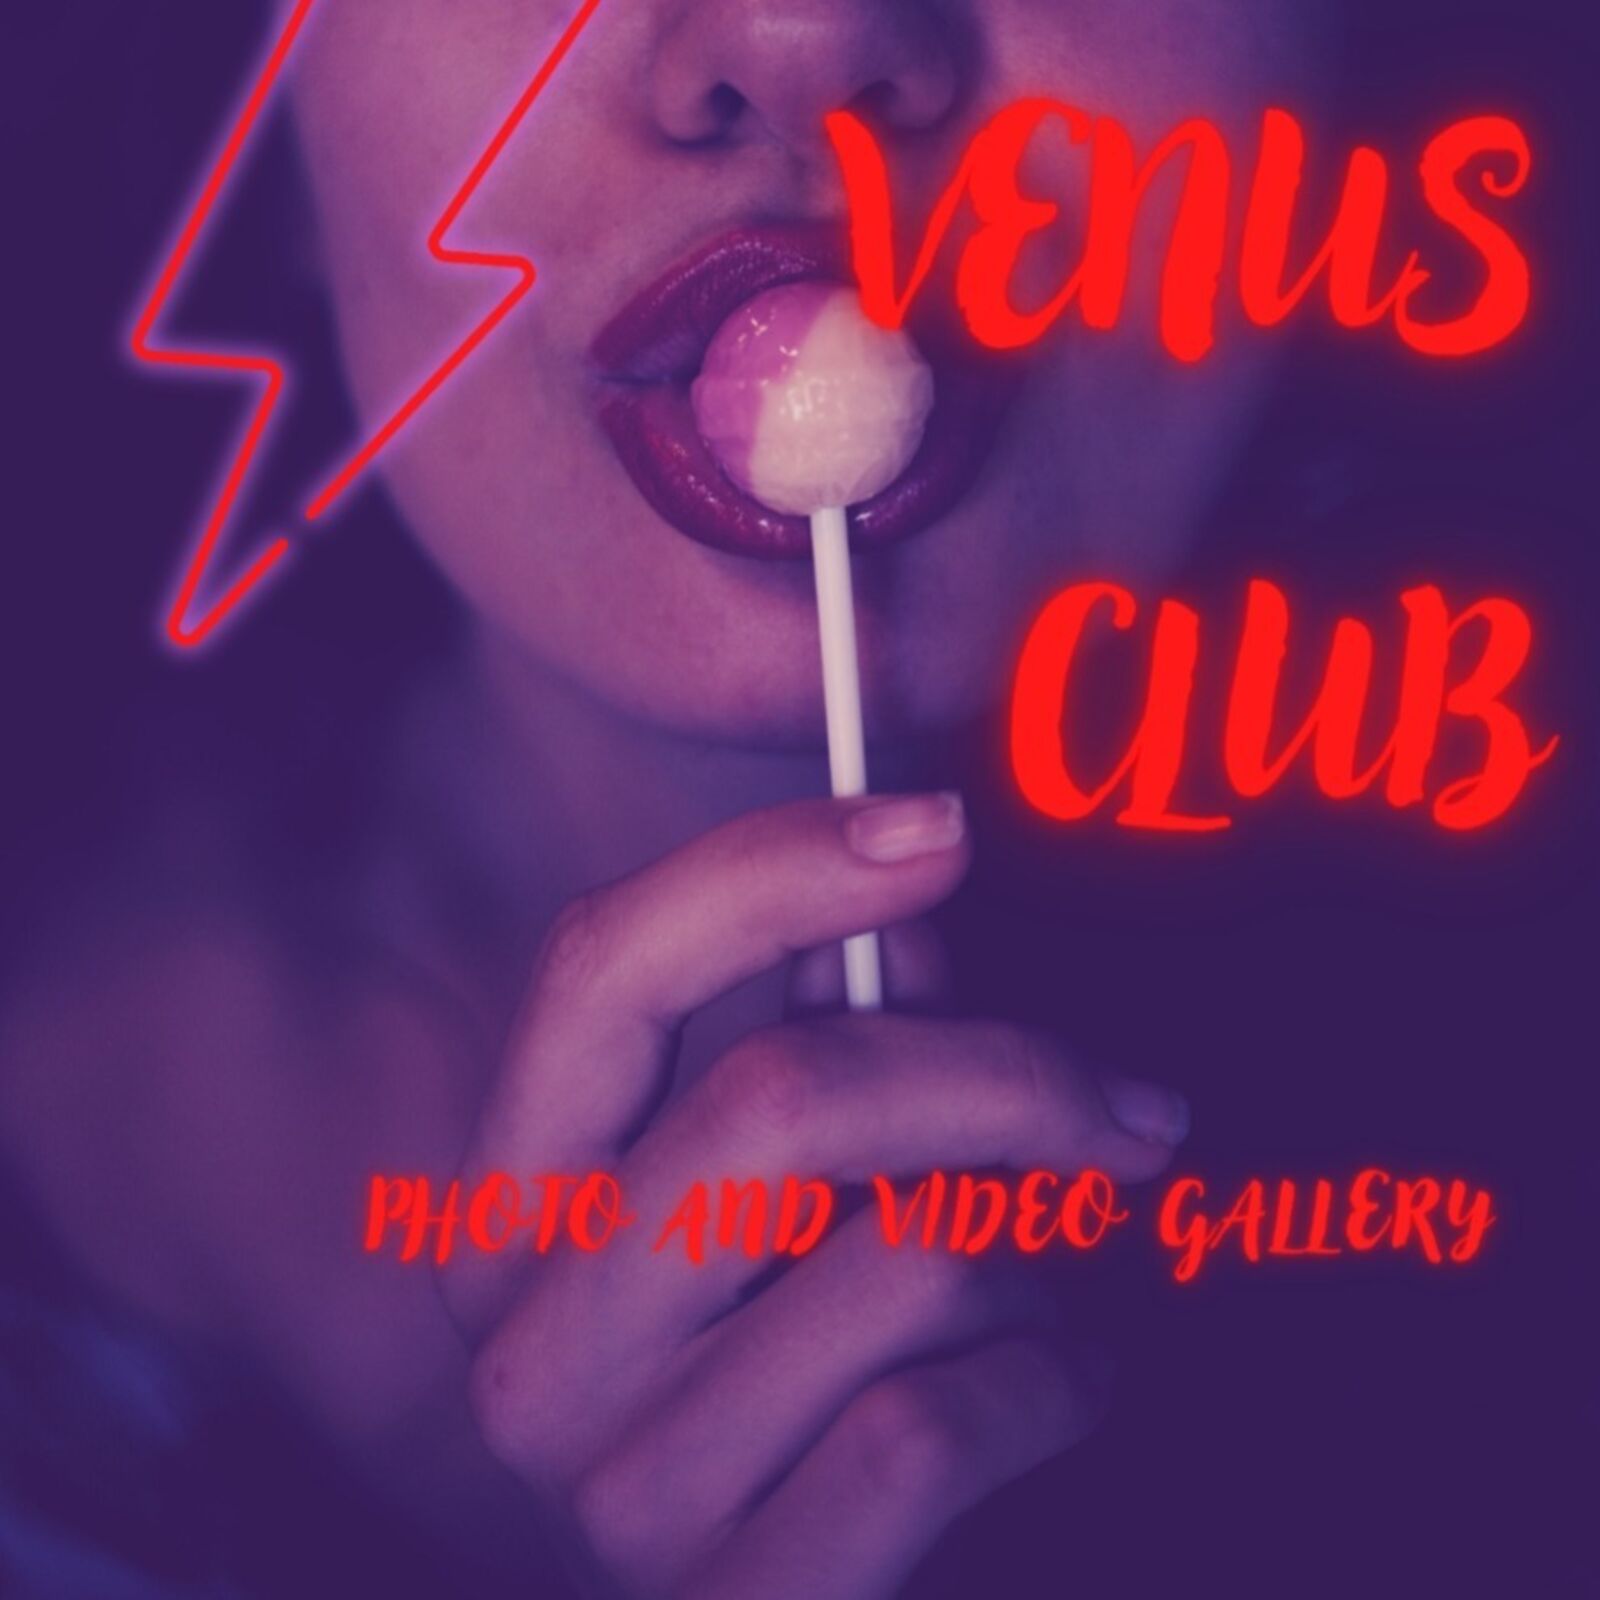 venus_club